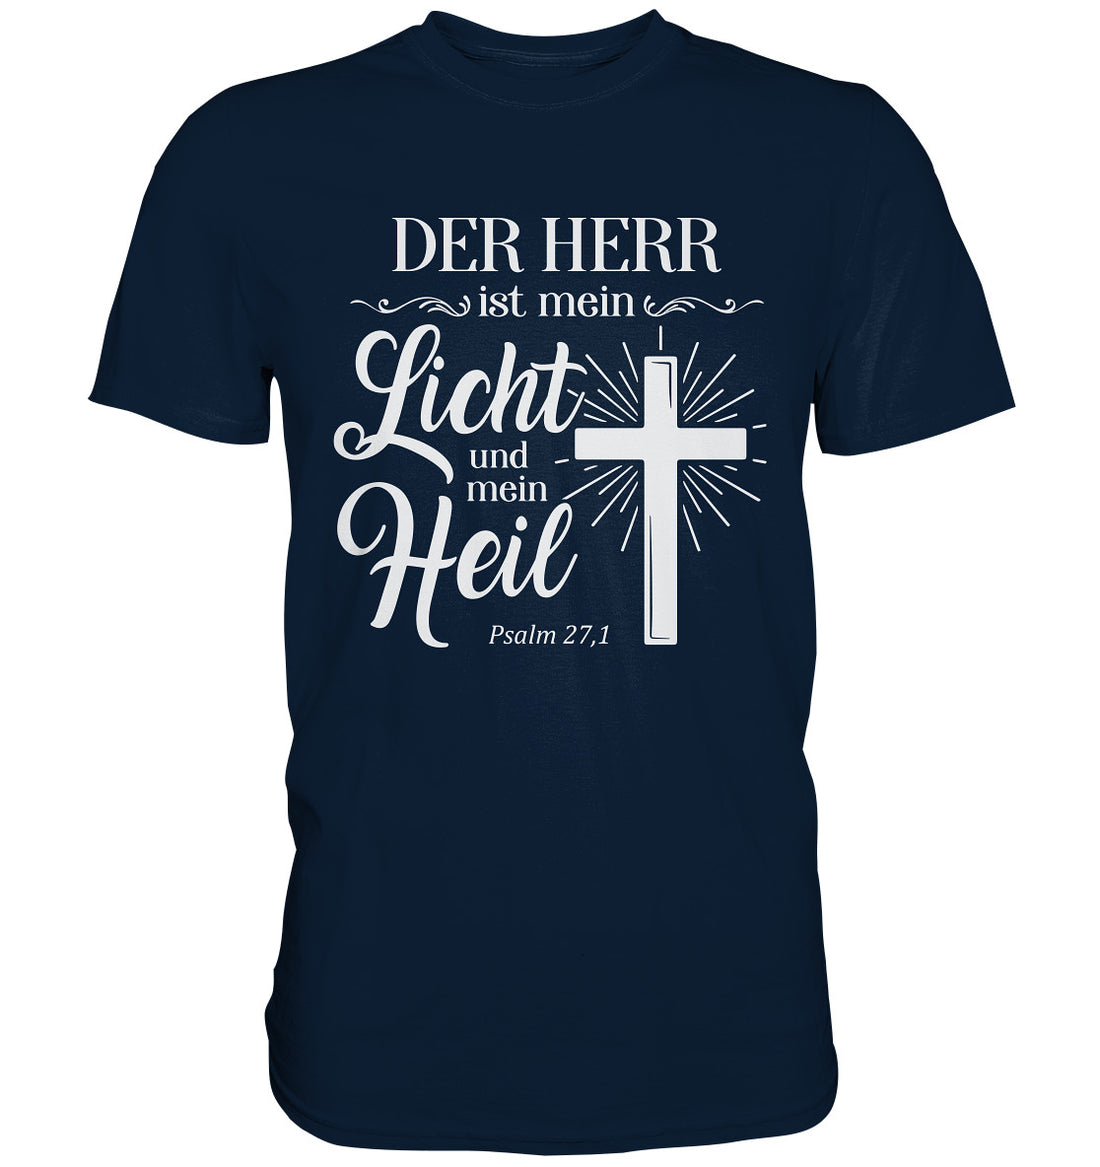 Ps 27,1 - Der HERR ist mein Licht &amp; mein Heil(2) - Premium Shirt